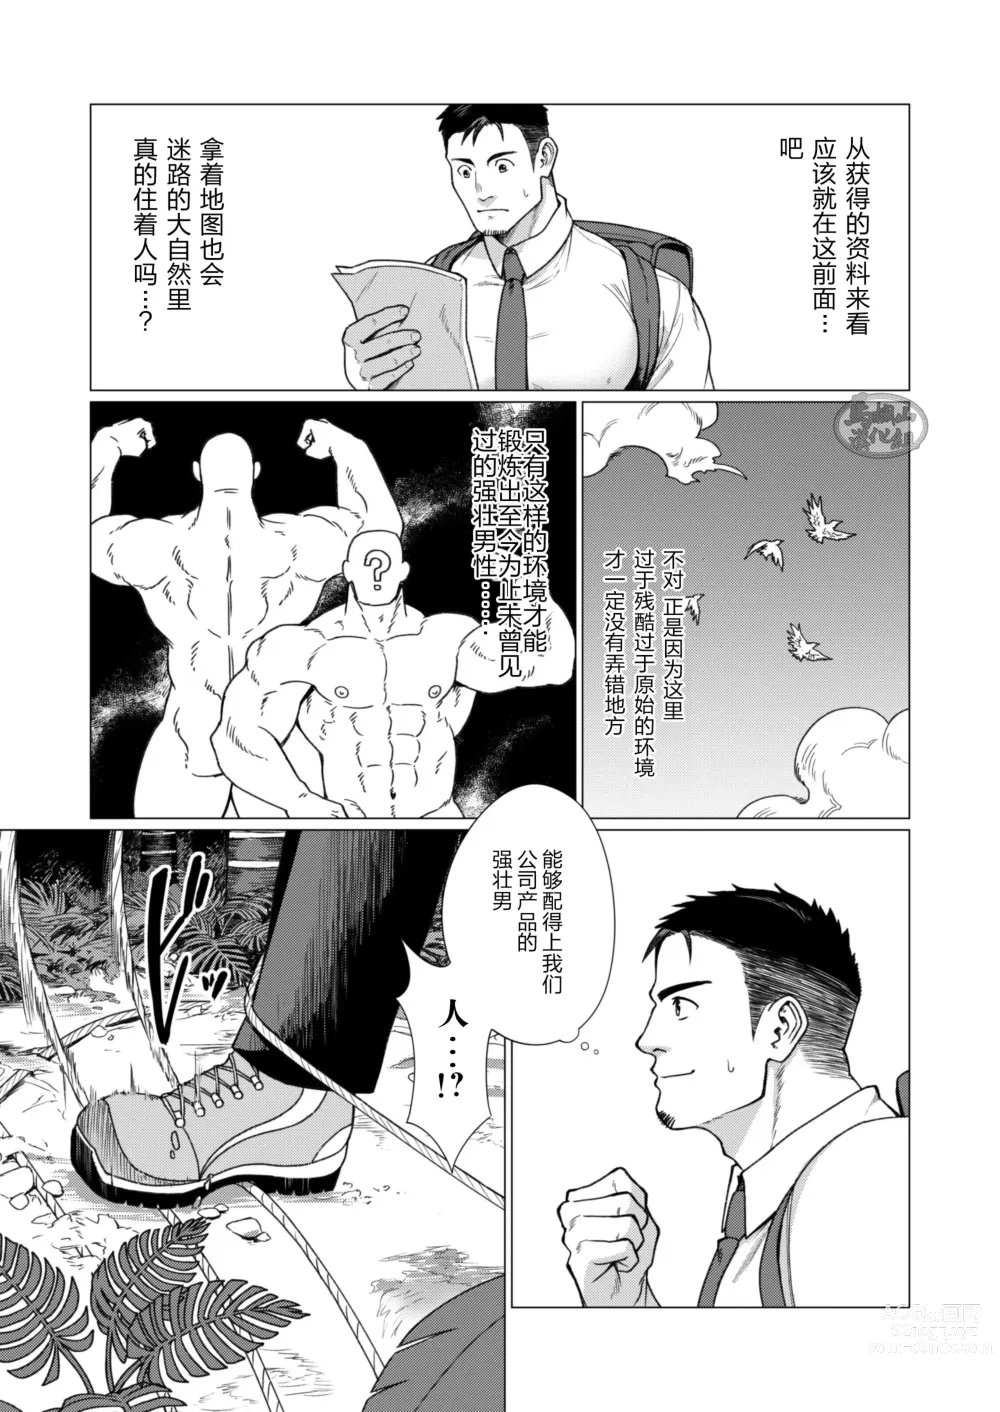 Page 3 of manga 部族の村の男たち